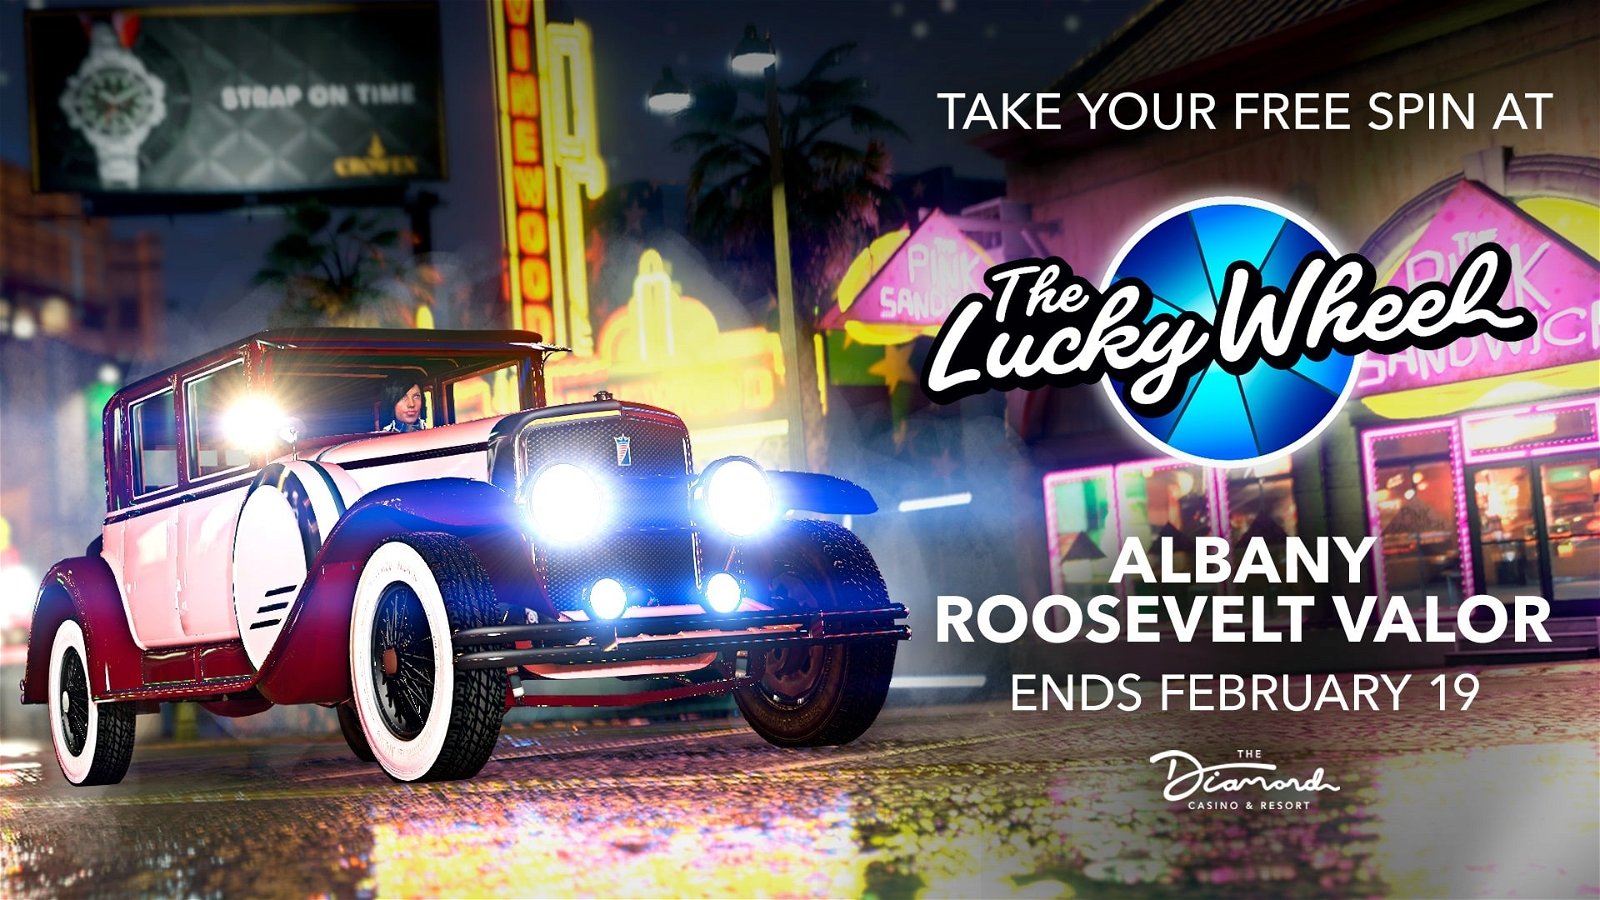 Albany Roosevelt Valor, coche del casino de san valentin 2020